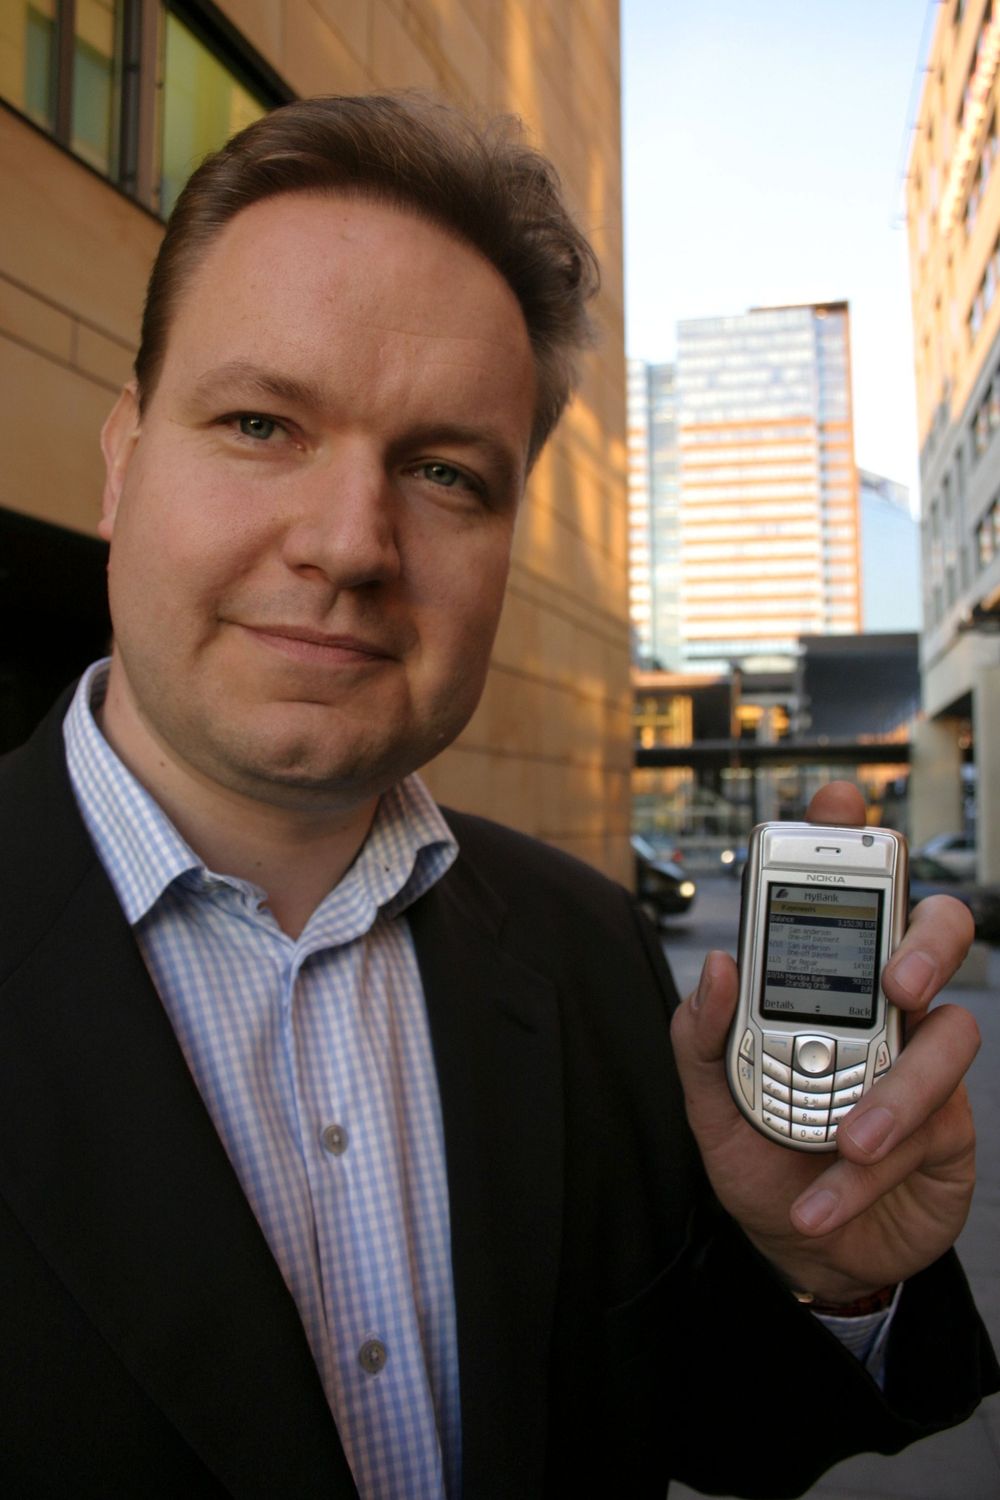 HÅPER PÅ BANK: Finnen Jyrki Suokas er viseadministrende markedssjef og håper at norske banker omfavner MyBank-programvaren hans. Nokia er deleier i selskapet som har utviklet de mobile banktjenestene. FOTO: Ragna Kronstad